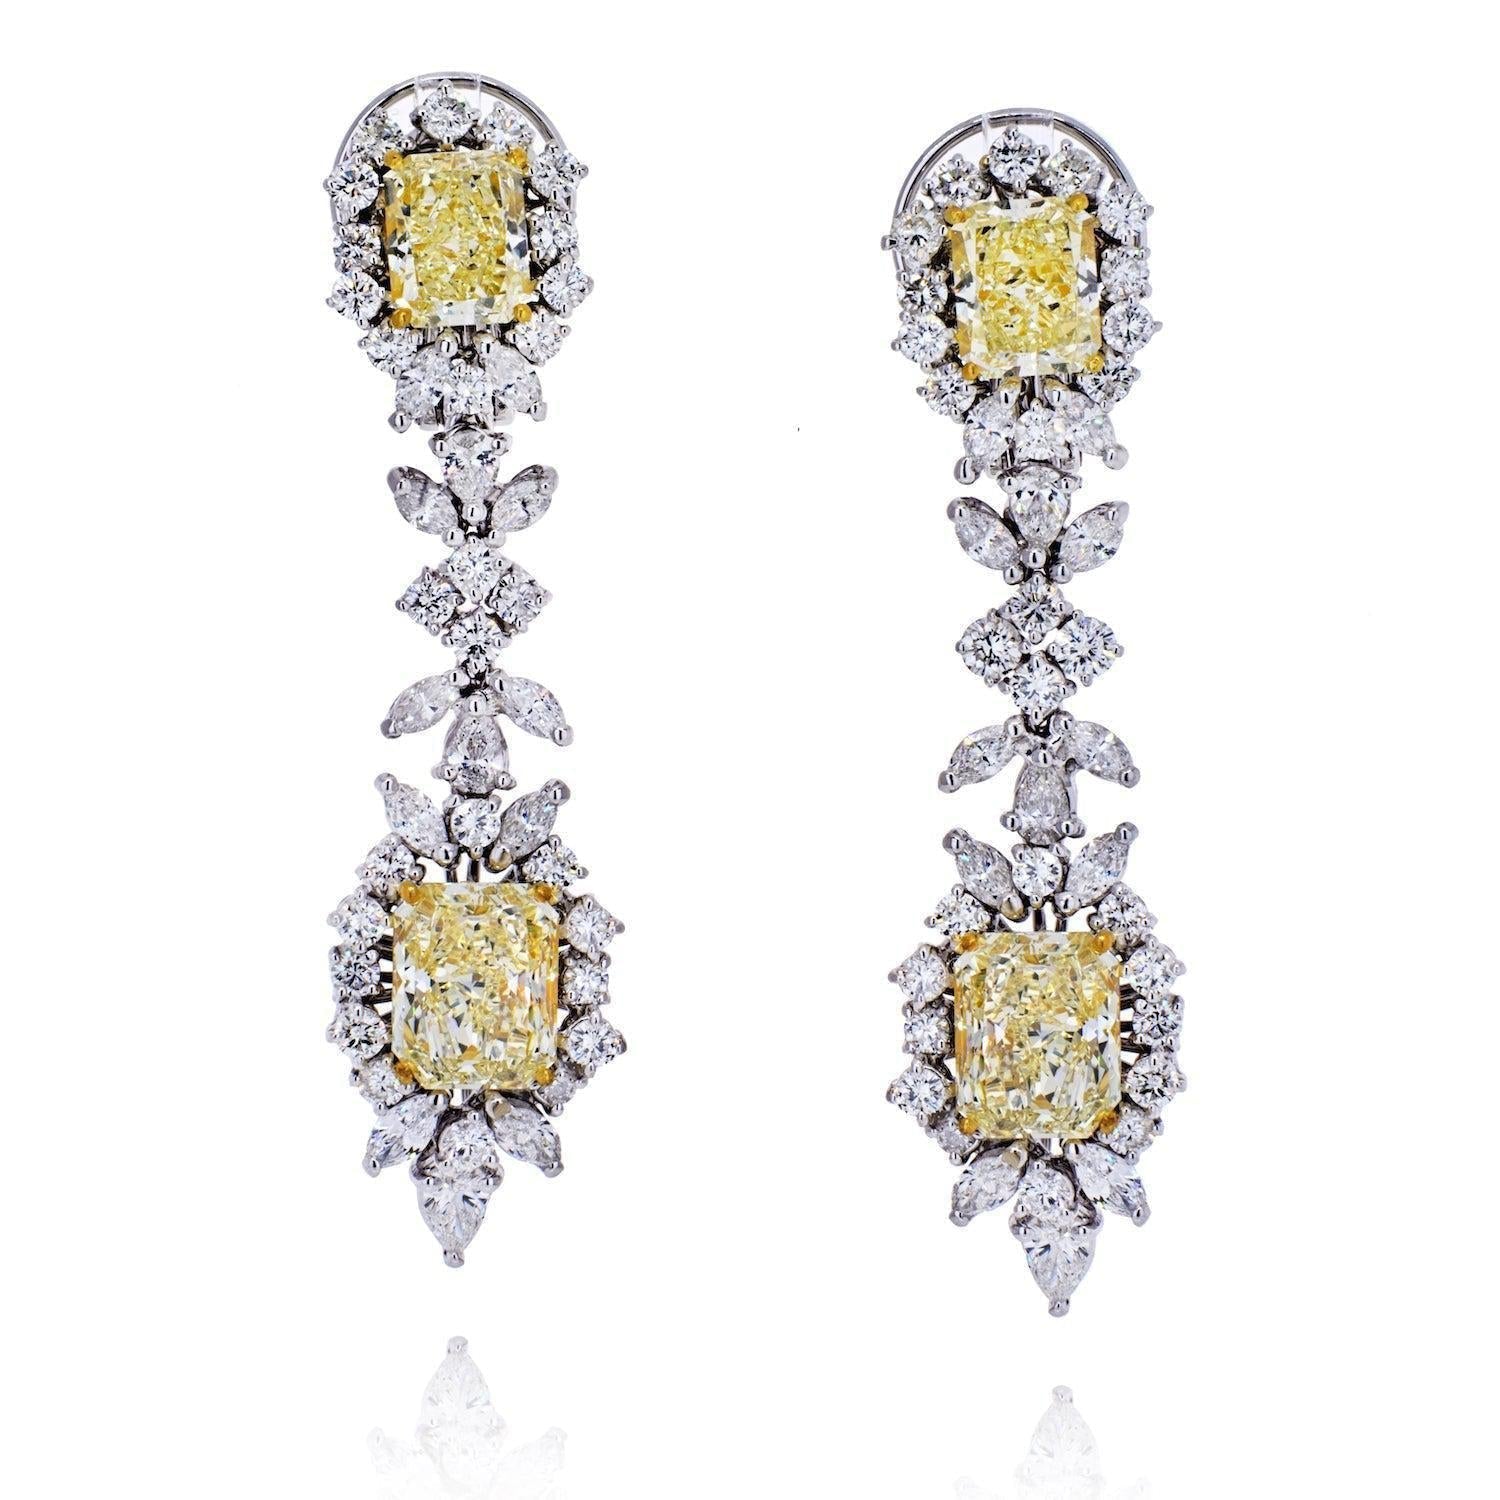 10.75 Carat Radiant-Cut VVS1 Fancy Yellow Diamond Drop Earrings in 18K White Gold - ASSAY